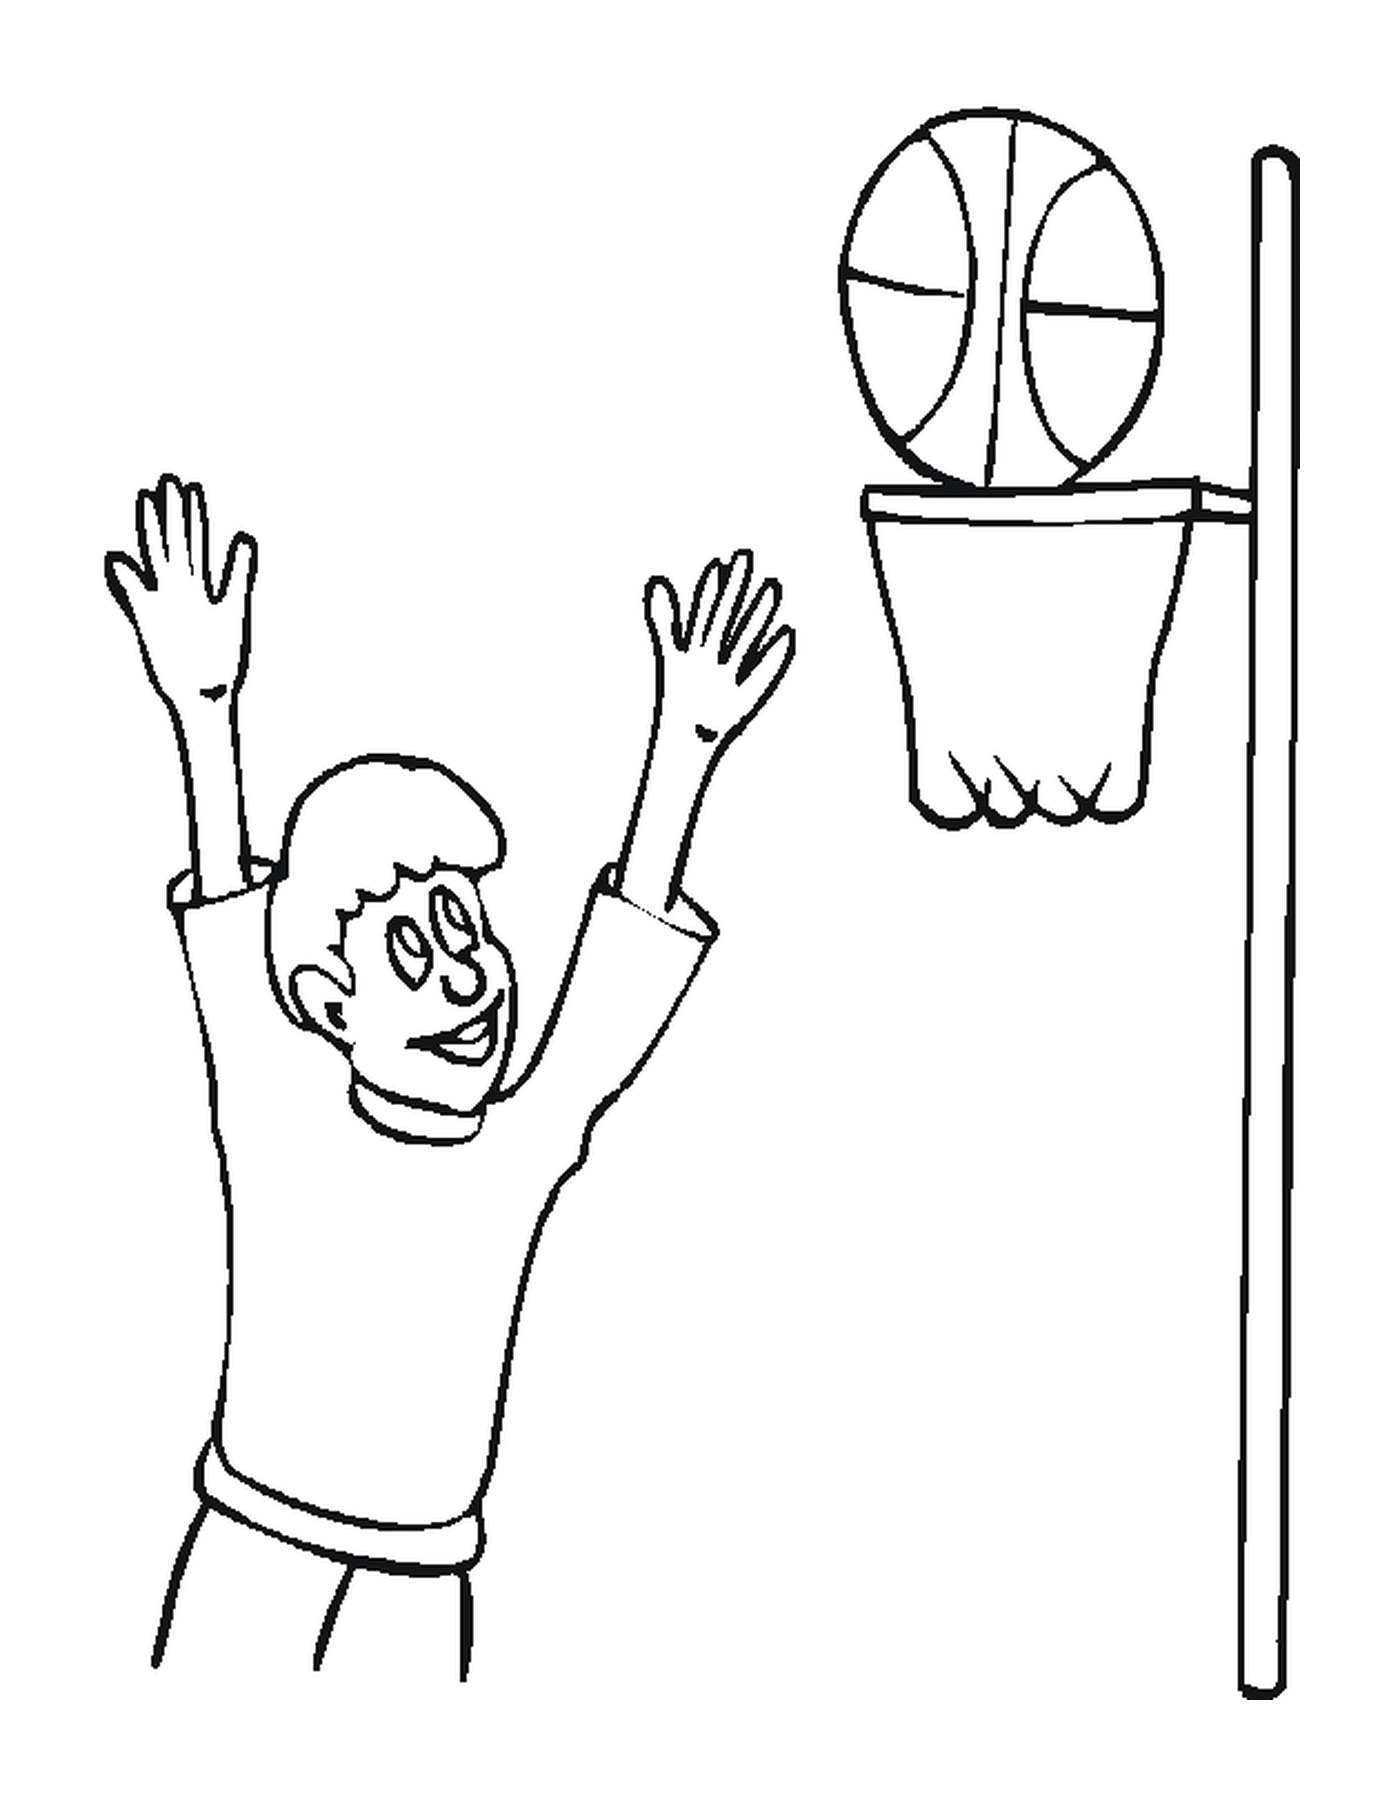  Un giocatore di basket gioca in una stanza 